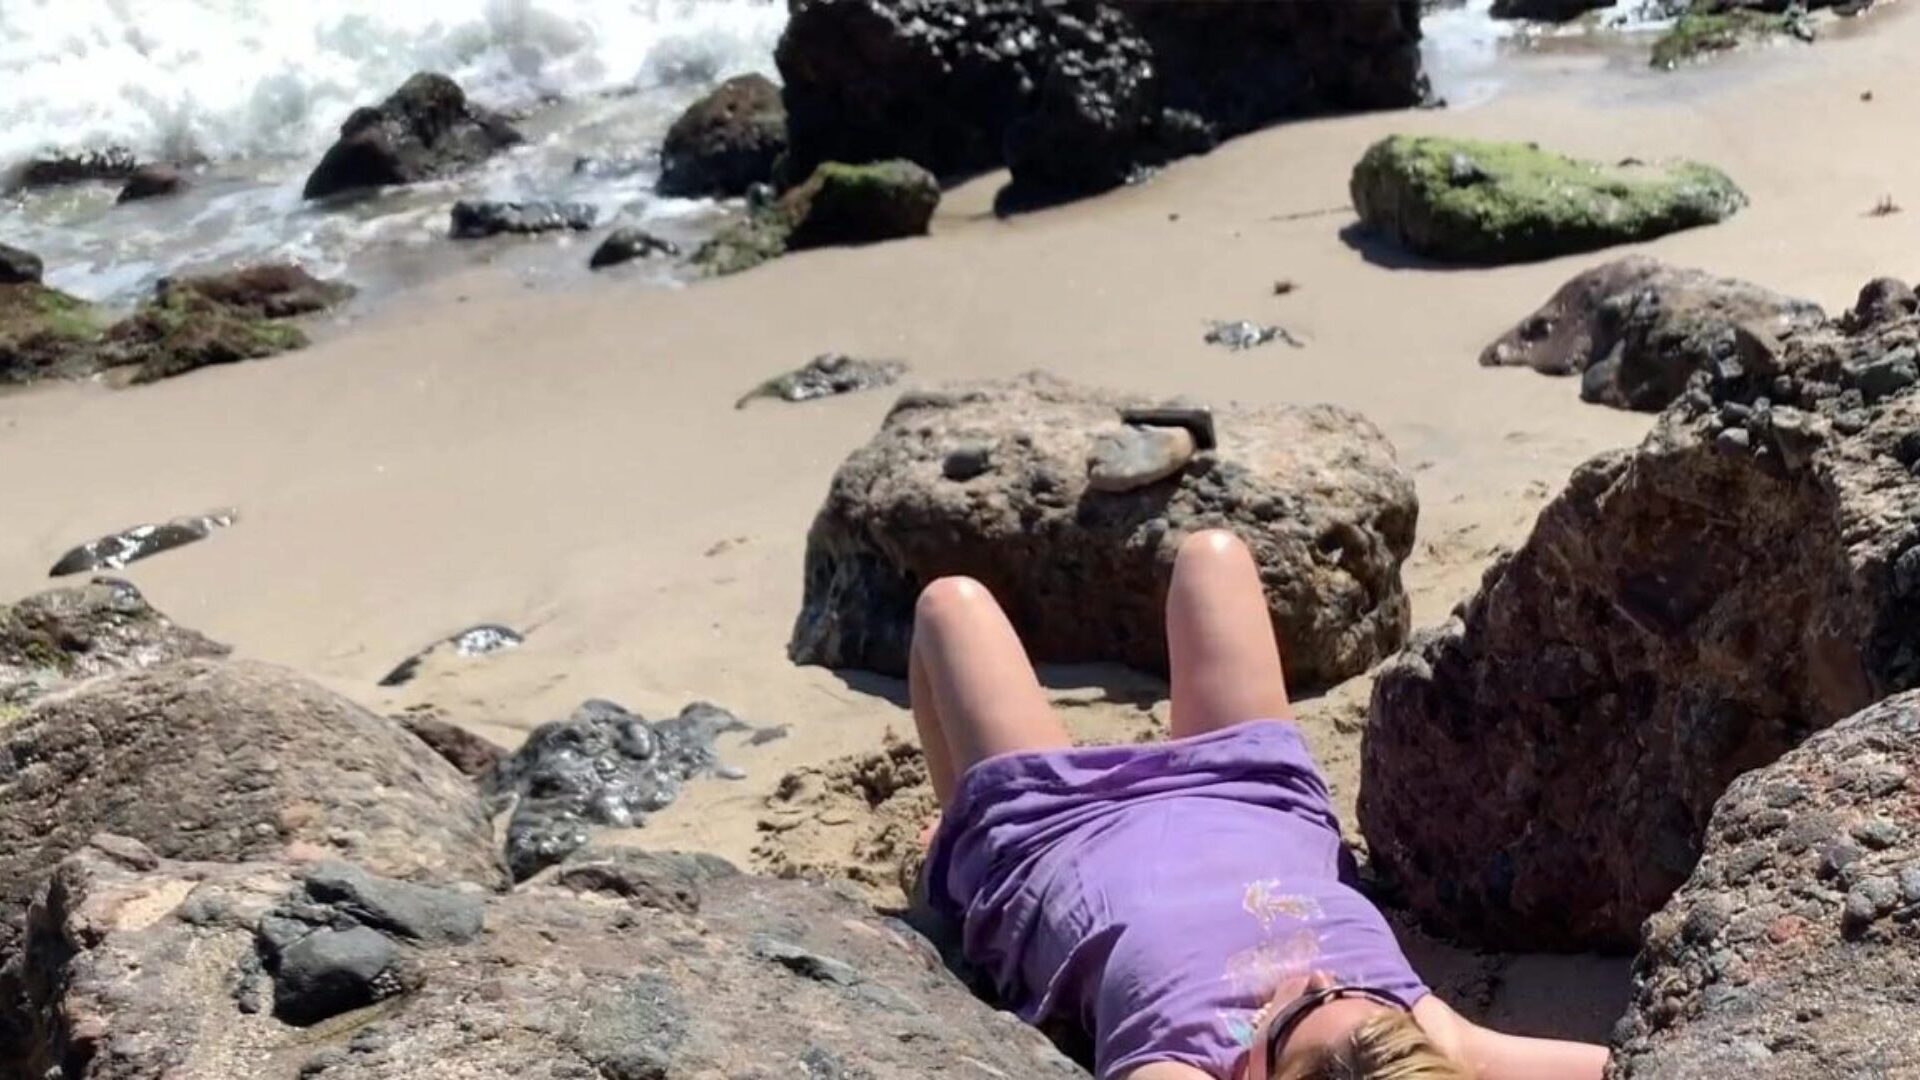 sladostrasna plavuša kako se sunča gola na plaži kopulira prolaznika seksi plavuša koja pumpa na plaži uhvaćena u kameru